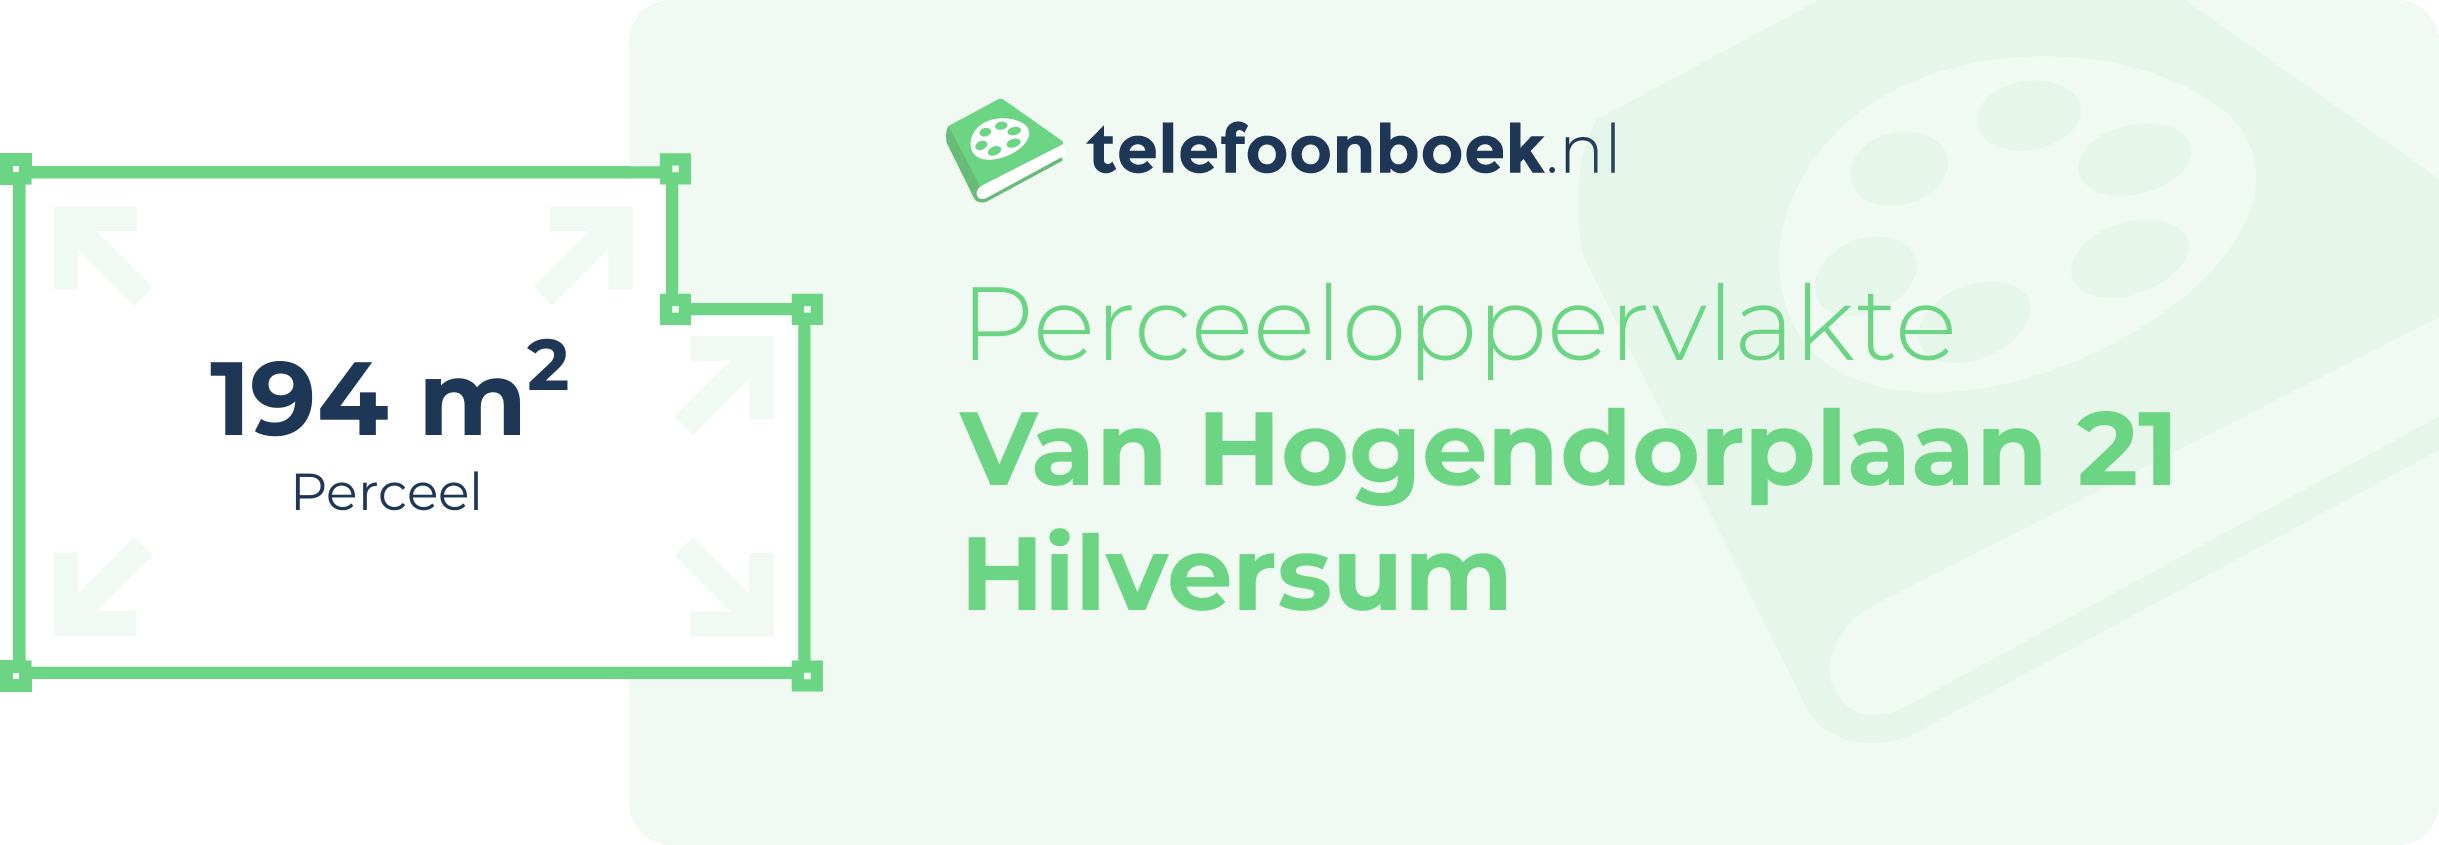 Perceeloppervlakte Van Hogendorplaan 21 Hilversum